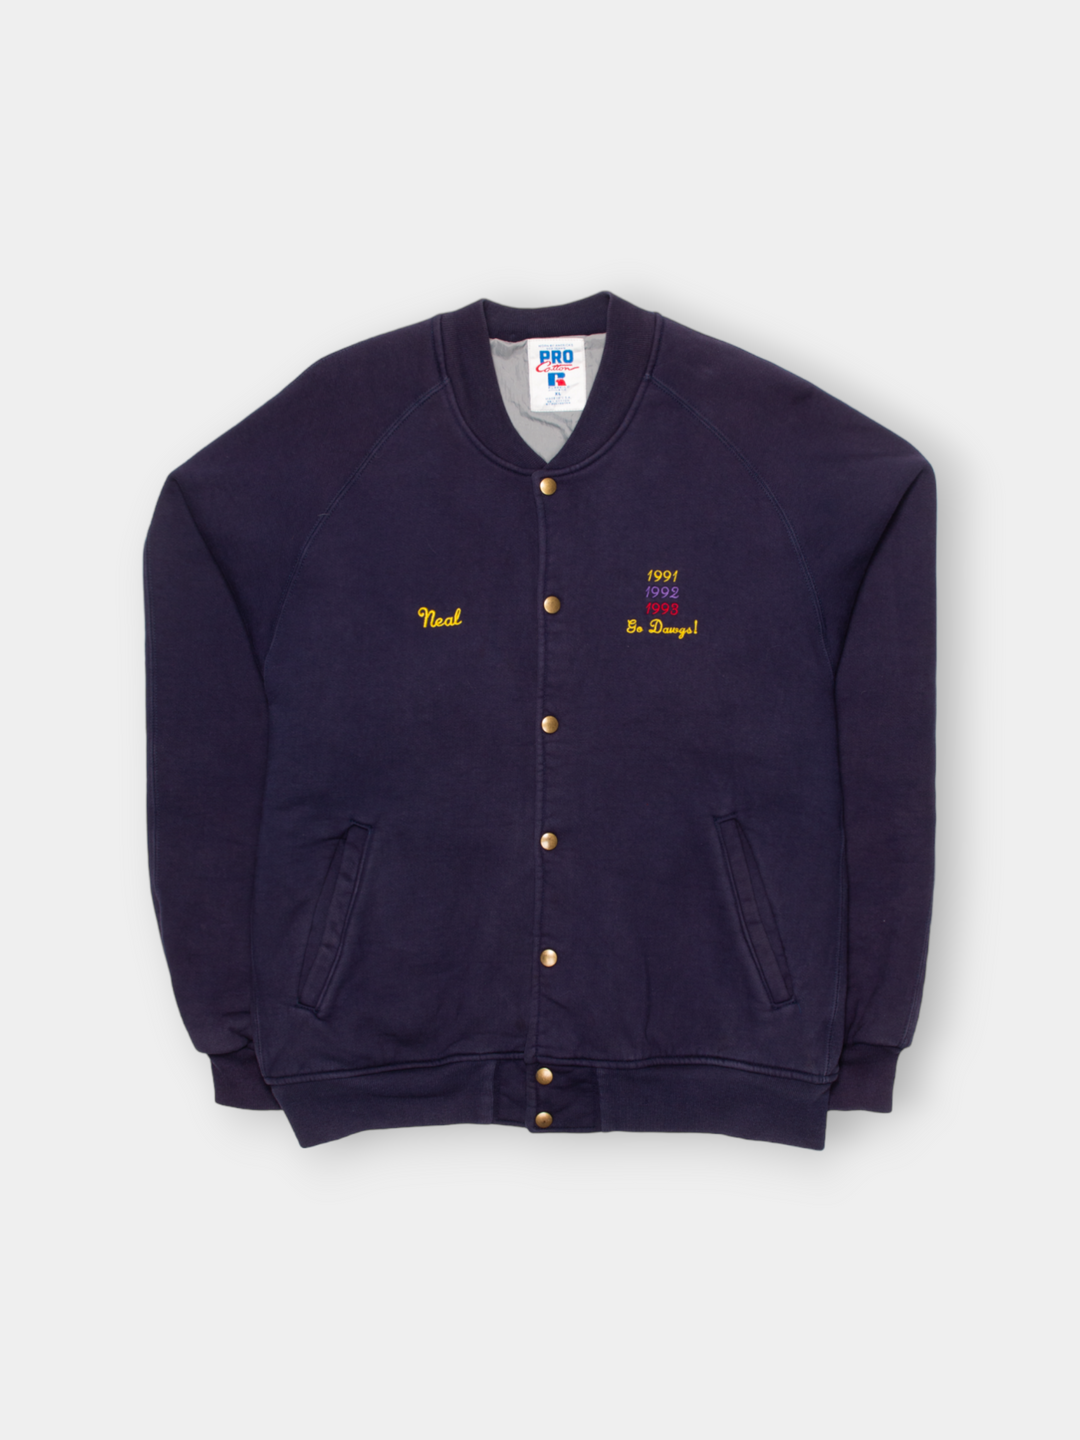 '93 Huskees Rose Bowl Woolen Bomber Jacket (XL)